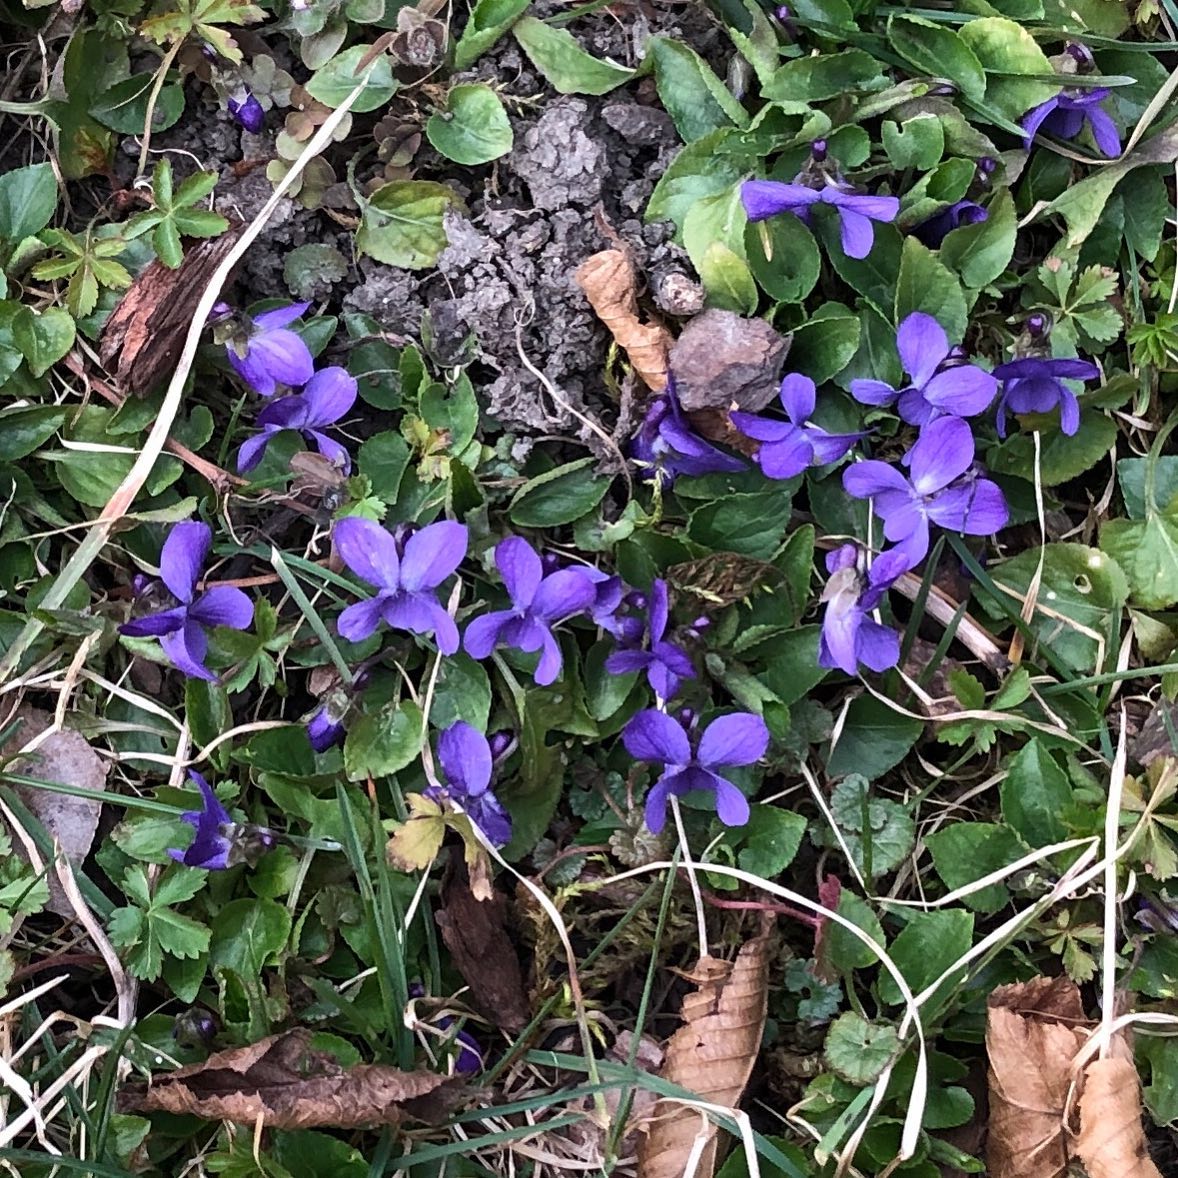 Ein paar zarte Veilchen kündigen von nahendem Frühling 🌱#spring #frühling #violets #veilchen #veilchenblüten #letitgrow #garten